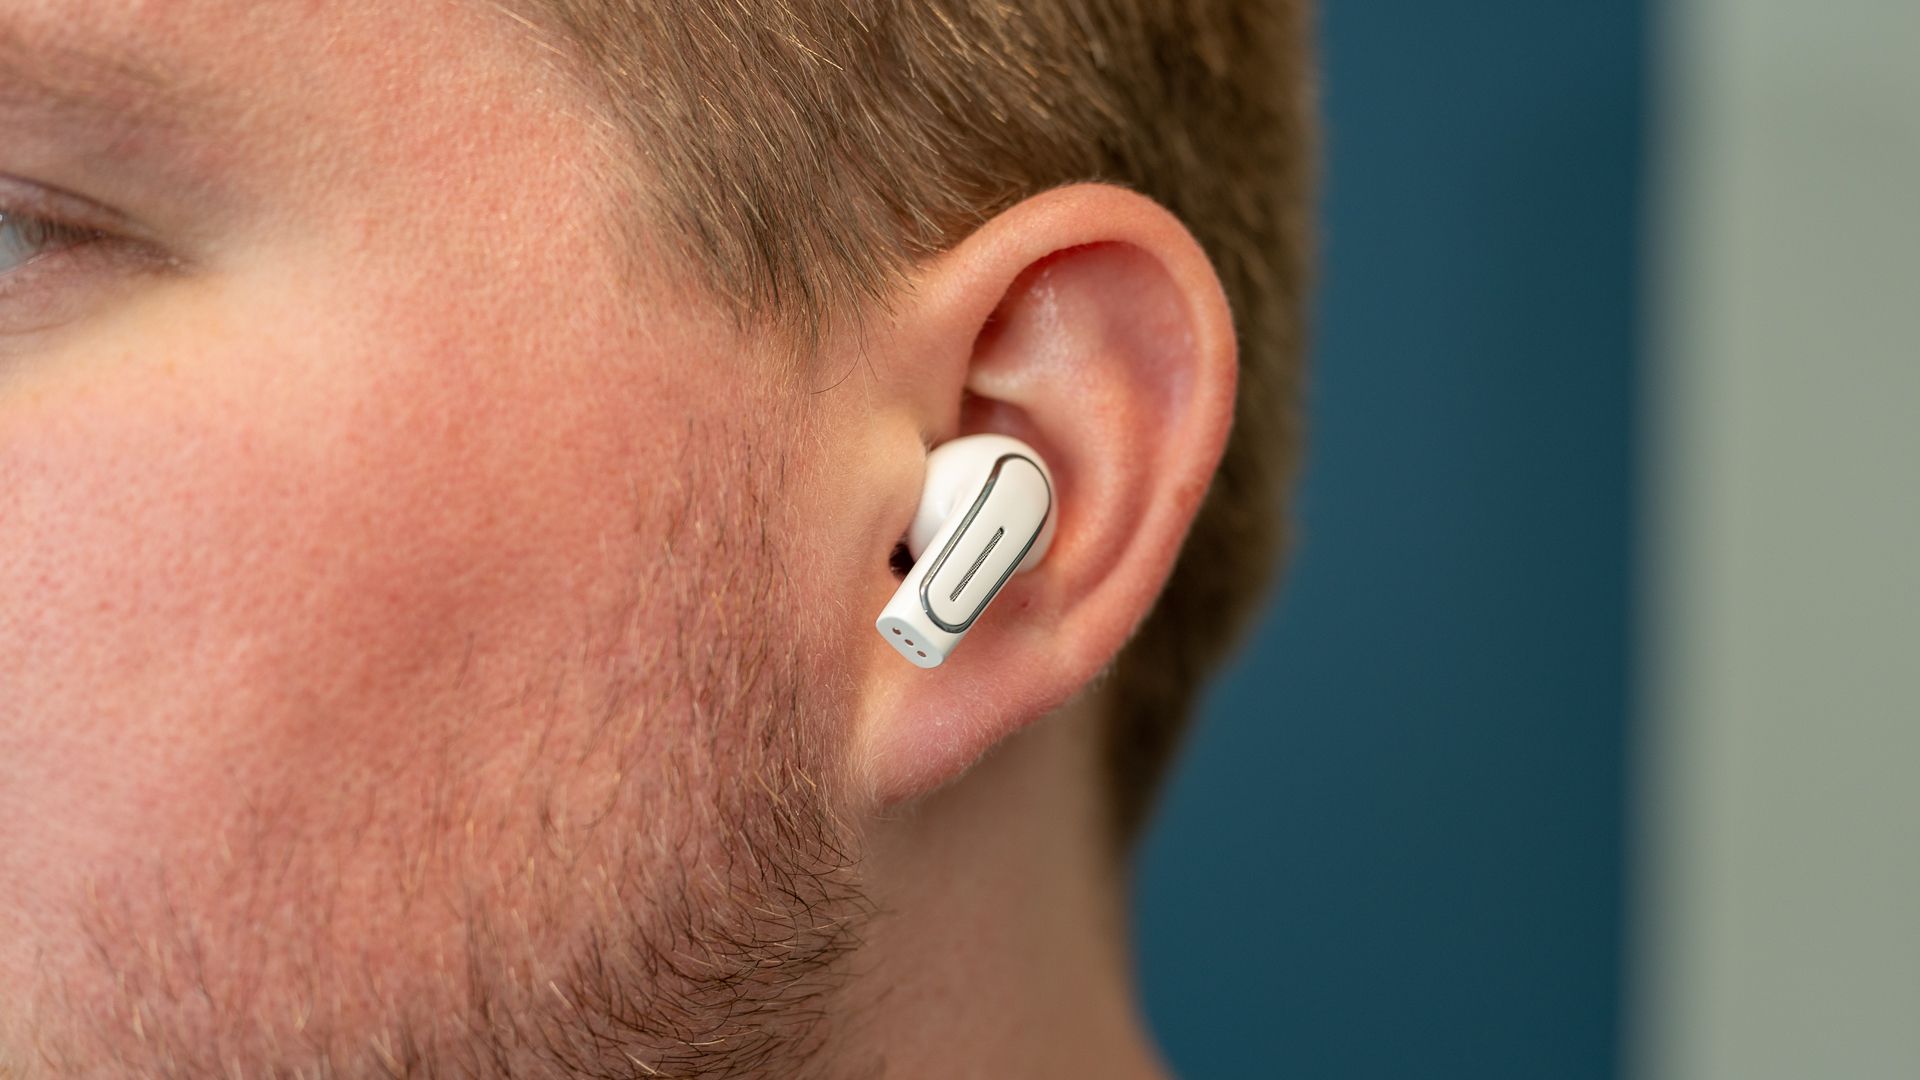 An earbud inside an ear